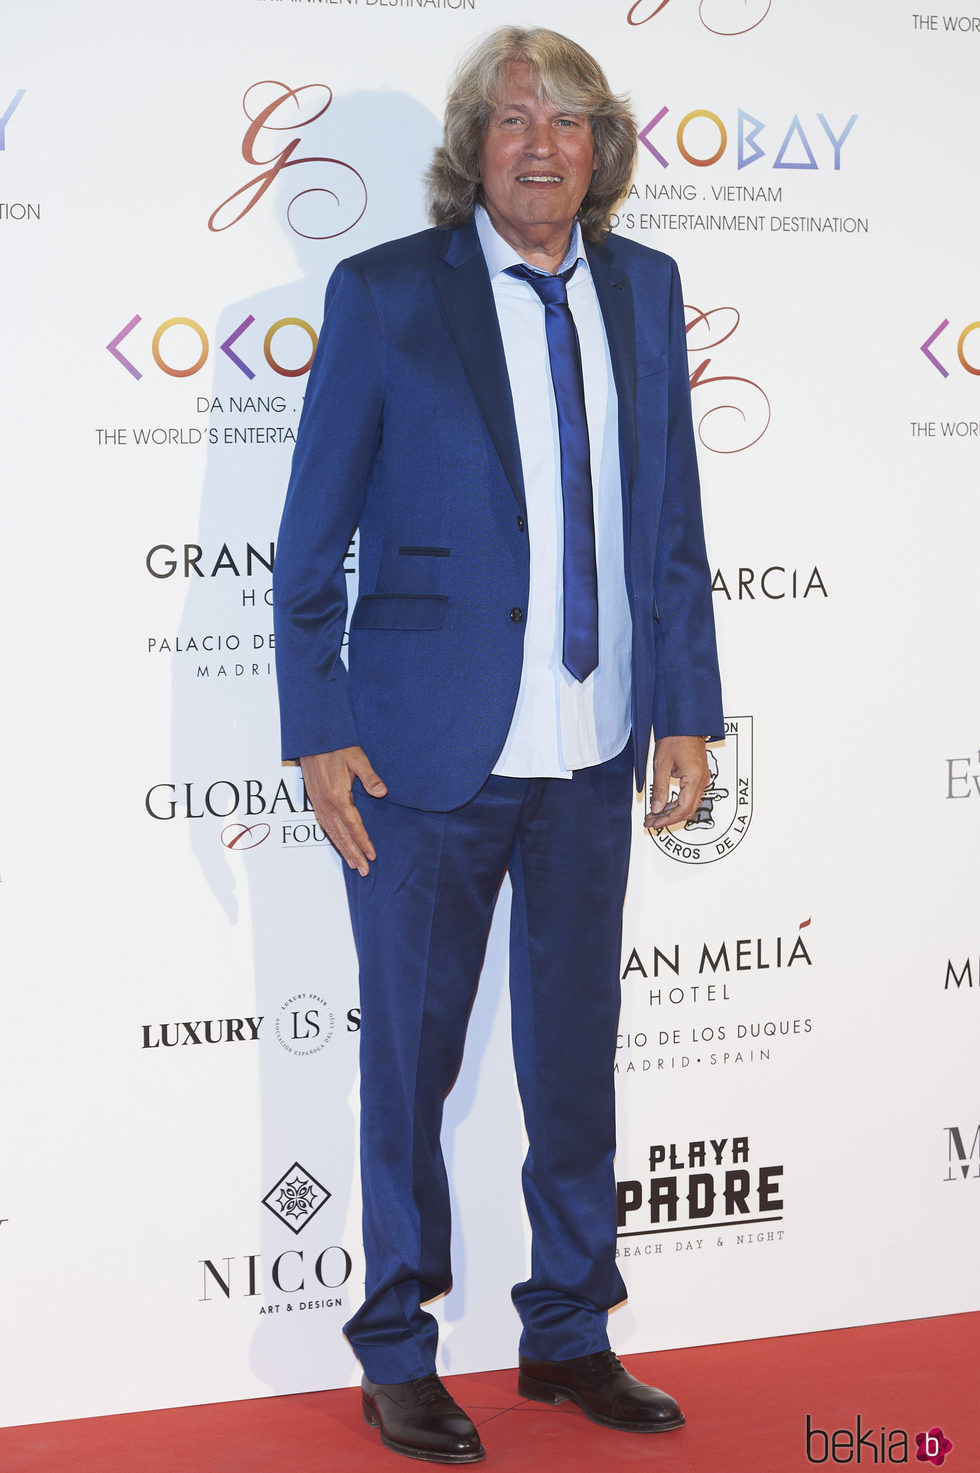 José Merce en la Global Gift Gala 2017 de Madrid